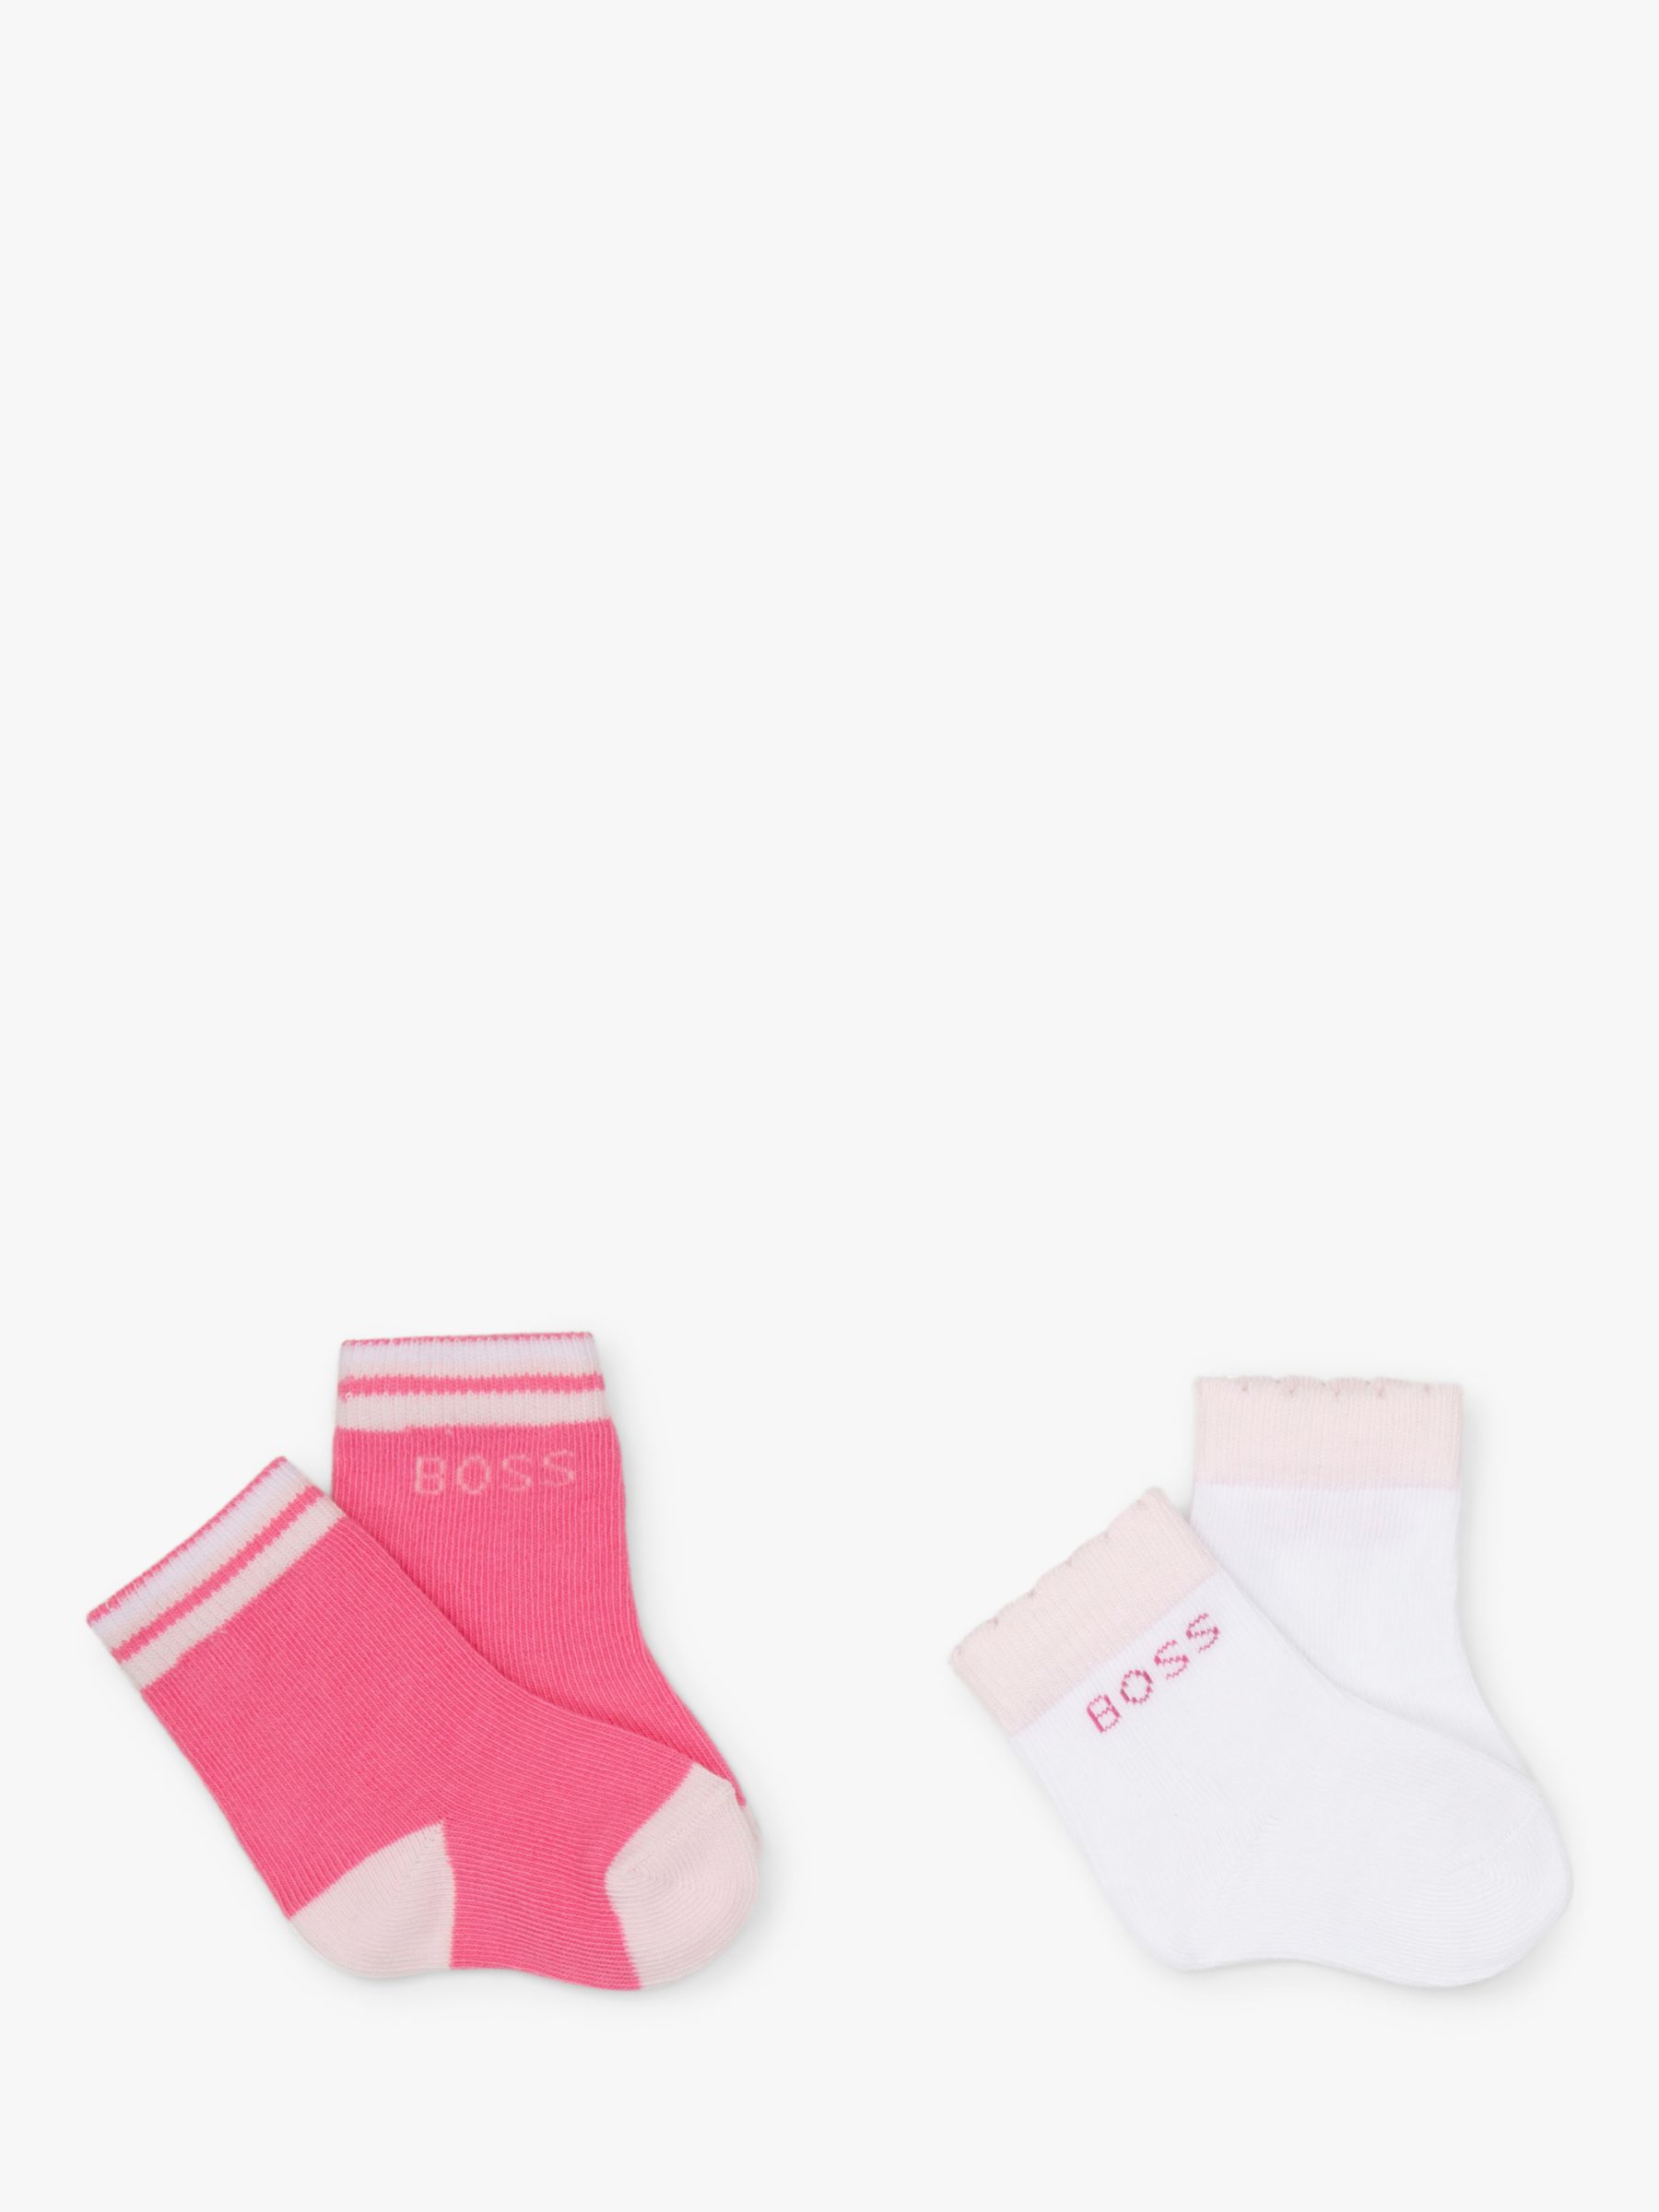 pouch Månenytår fiktiv HUGO BOSS Baby Logo & Stripe Ankle Socks, Pack of 2, White/Pink, 0-3 months